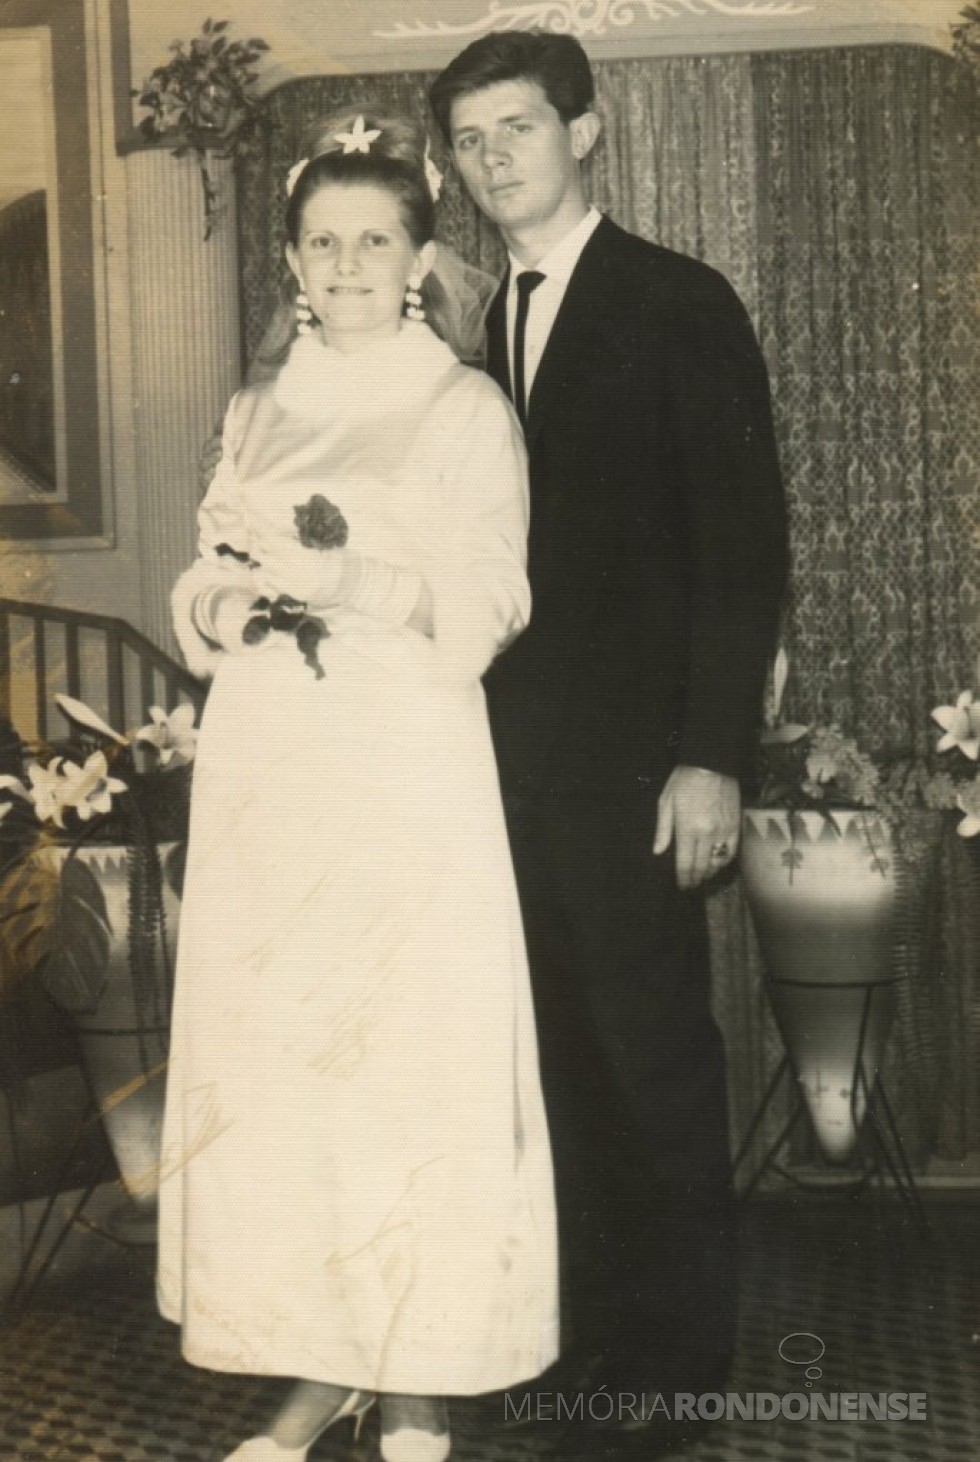 Jovens rondonenses Marina Gosenheimer e Orlando Miguel Sturm que casaram em julho de 1967. 
Imagem: Acervo Rafael Orlando Sturm - FOTO 3 -